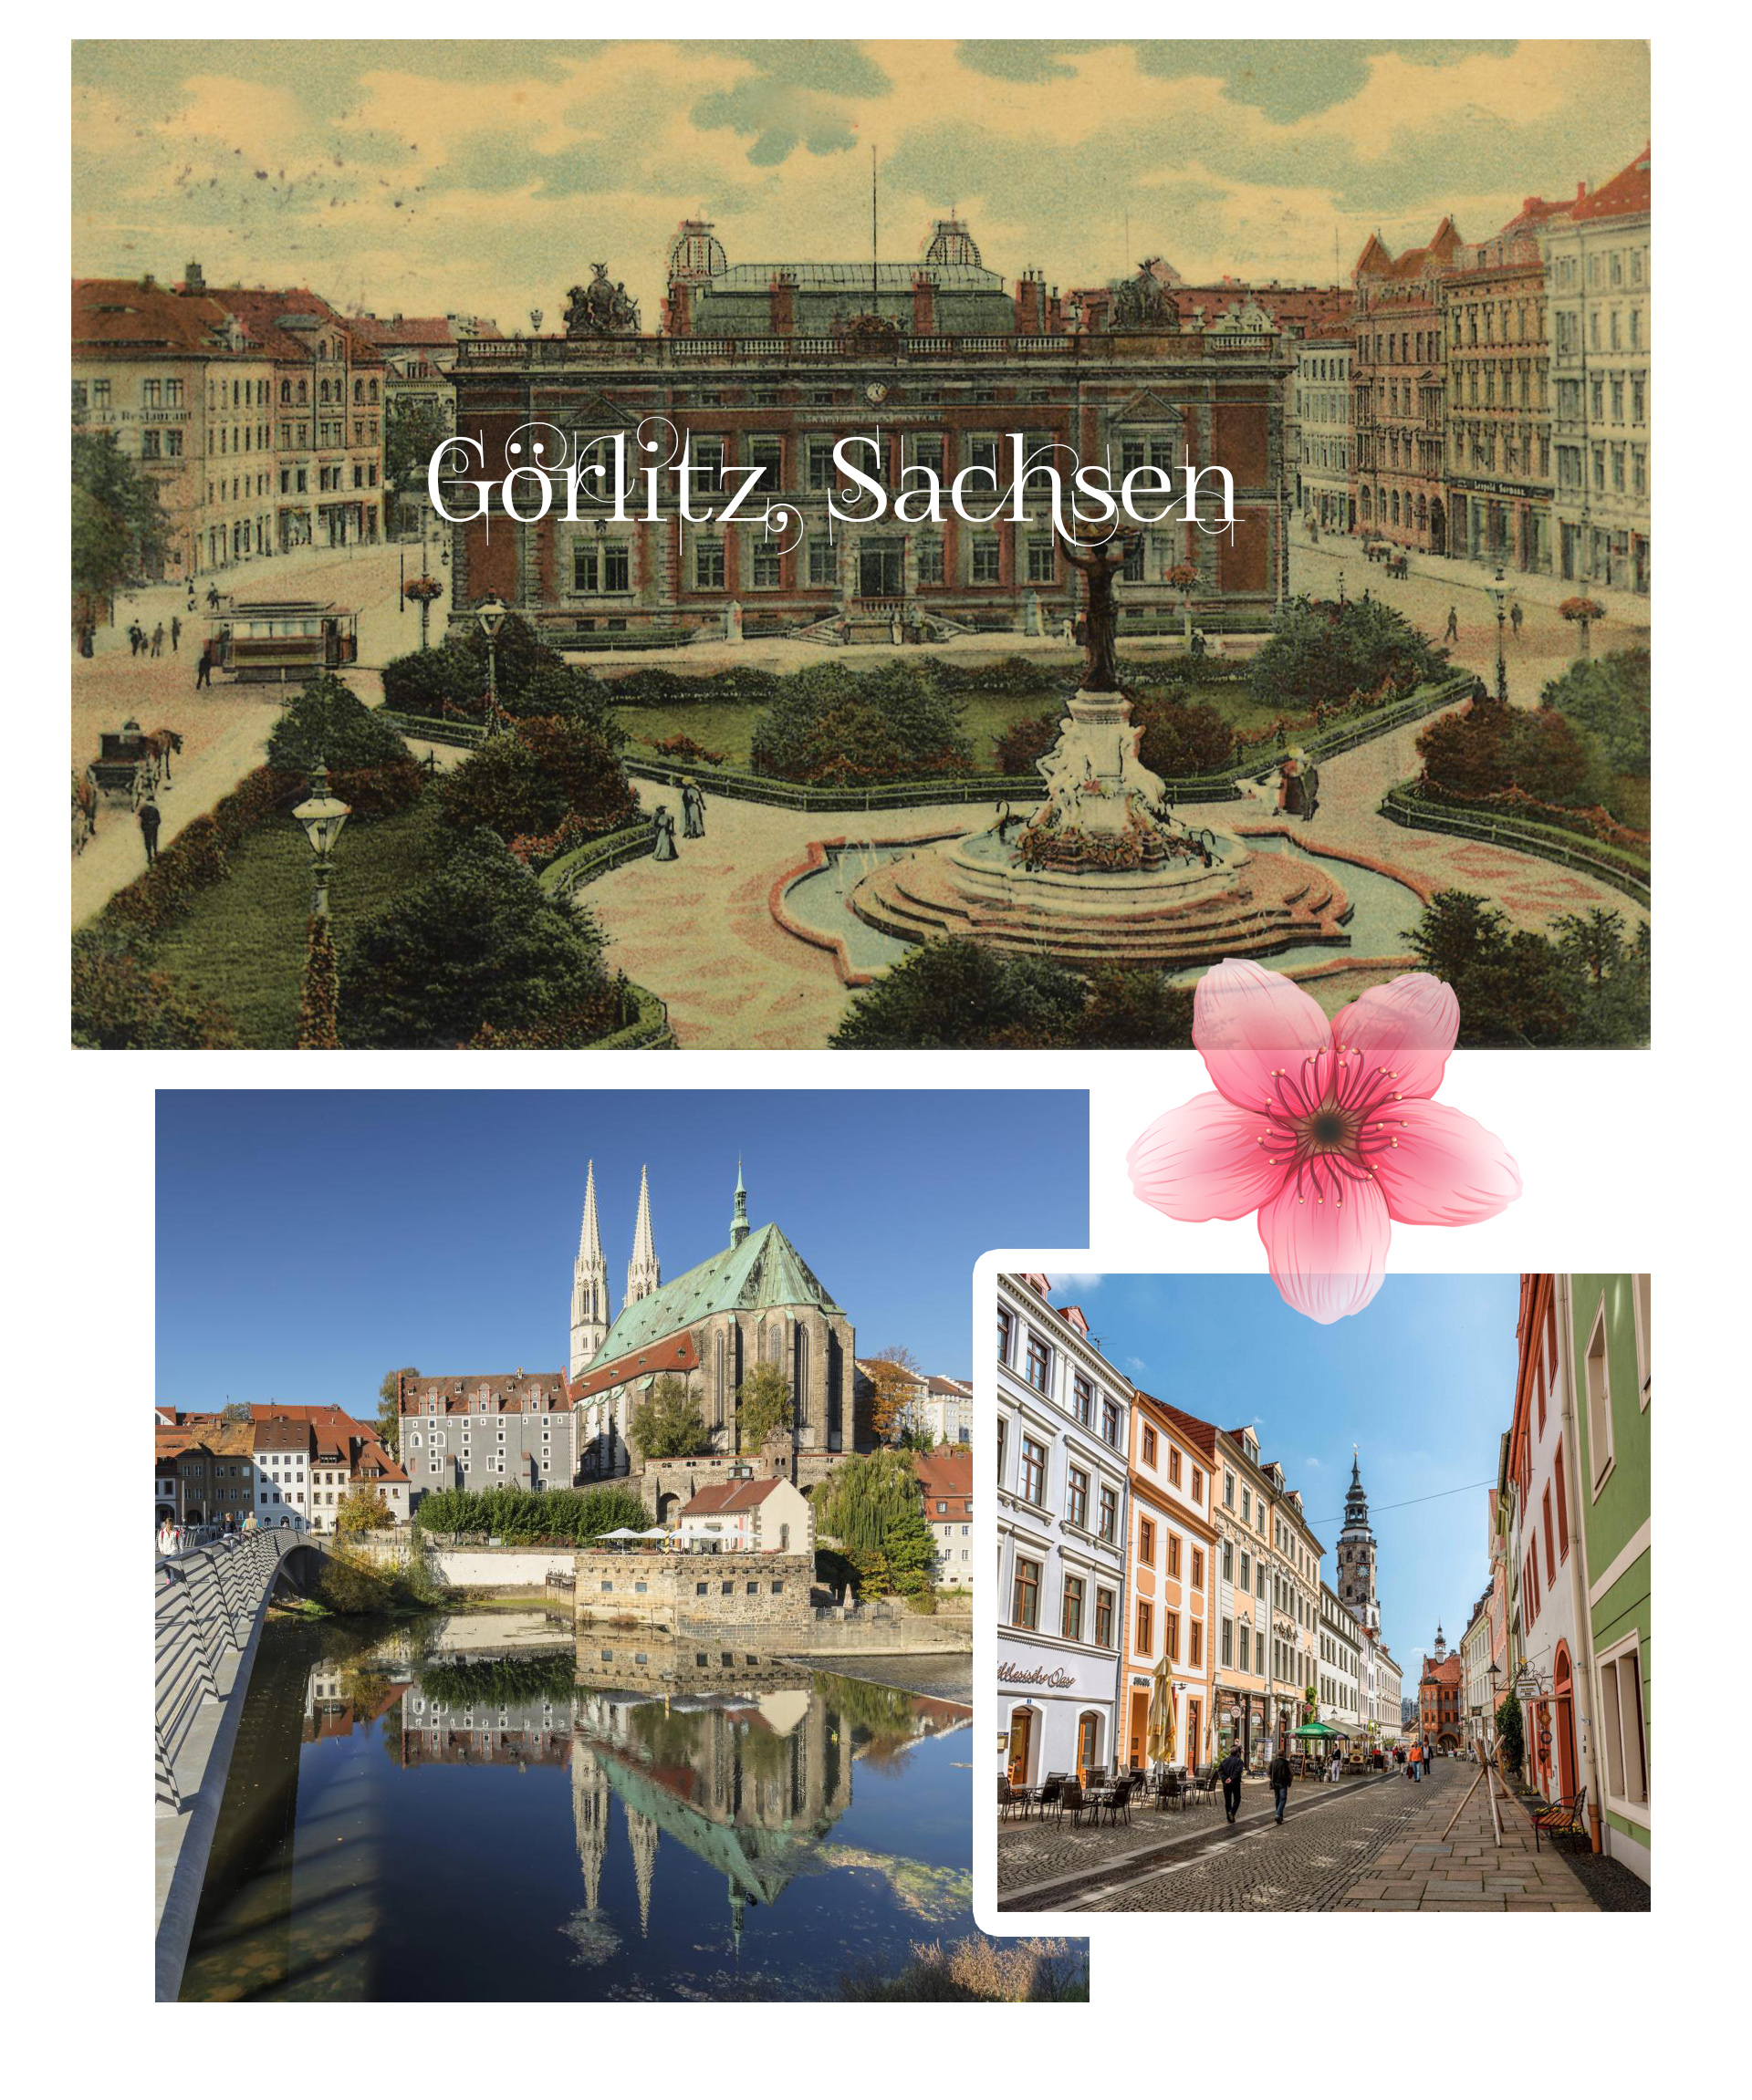 Khám phá những thị trấn nhỏ xinh đẹp nhất nước Đức - 5